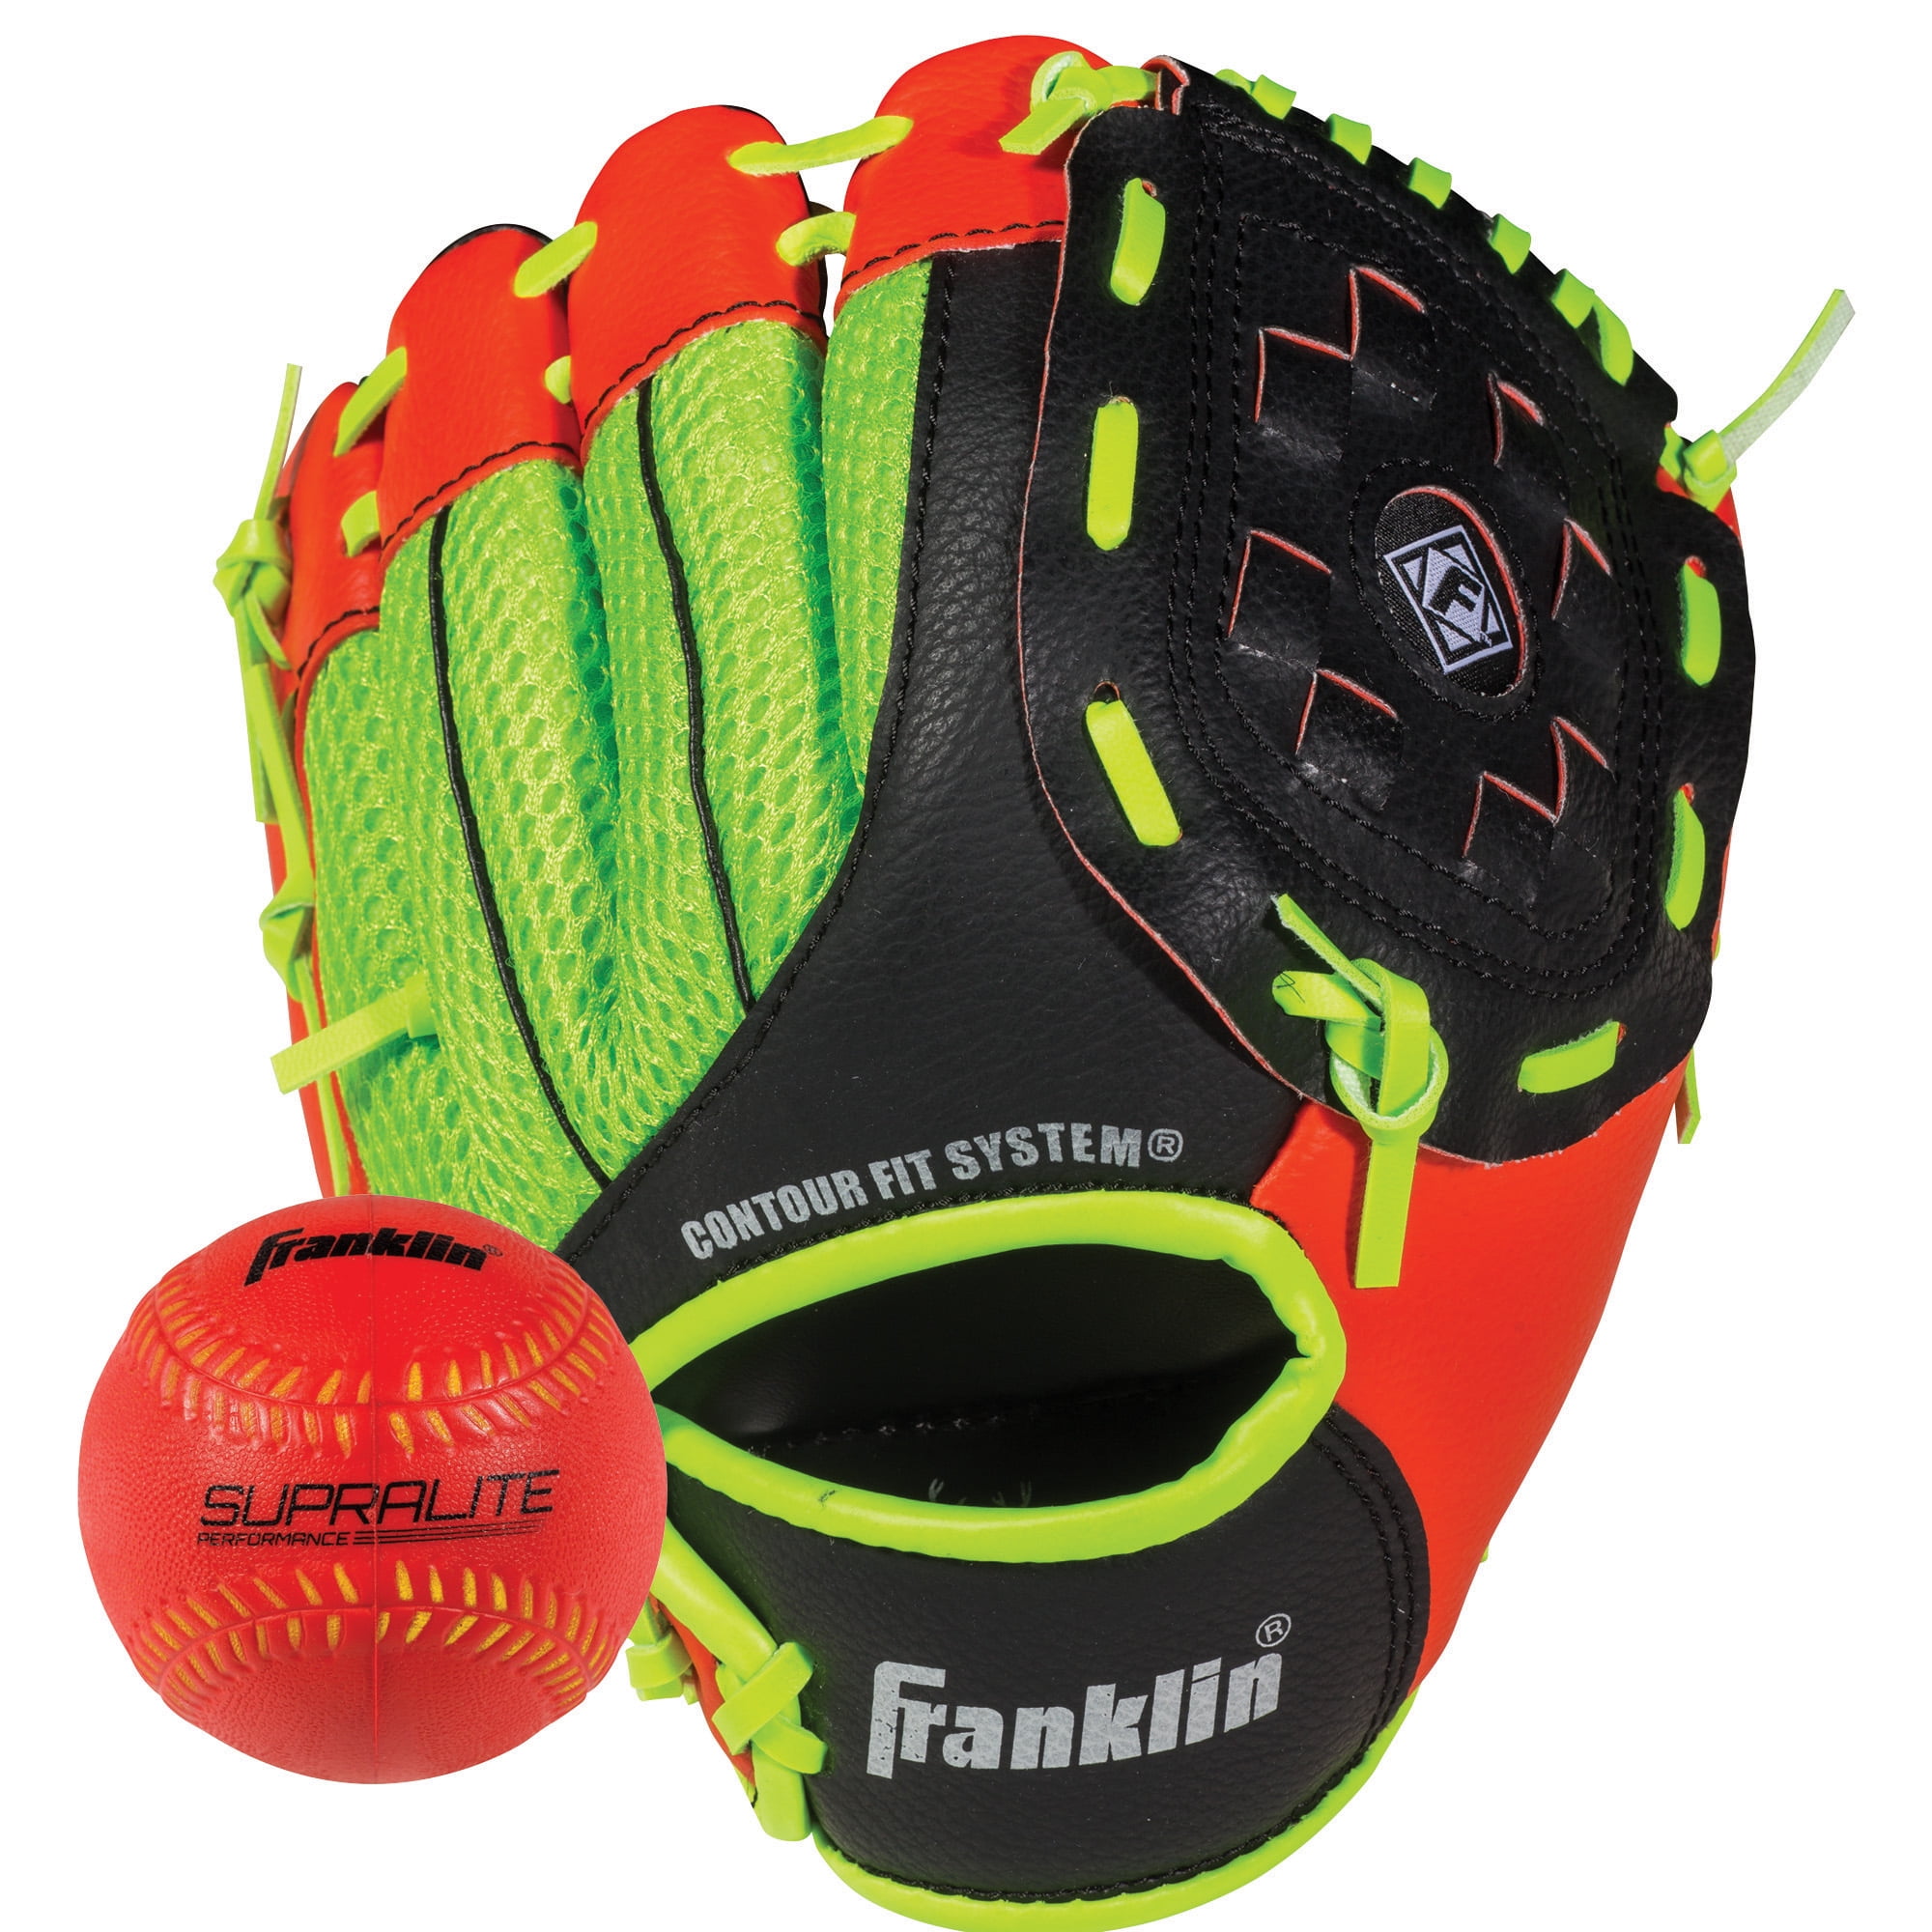 Baseball Soft Foam 9" Franklin Teeball Fielding Glove Air-Tech mit Ball 